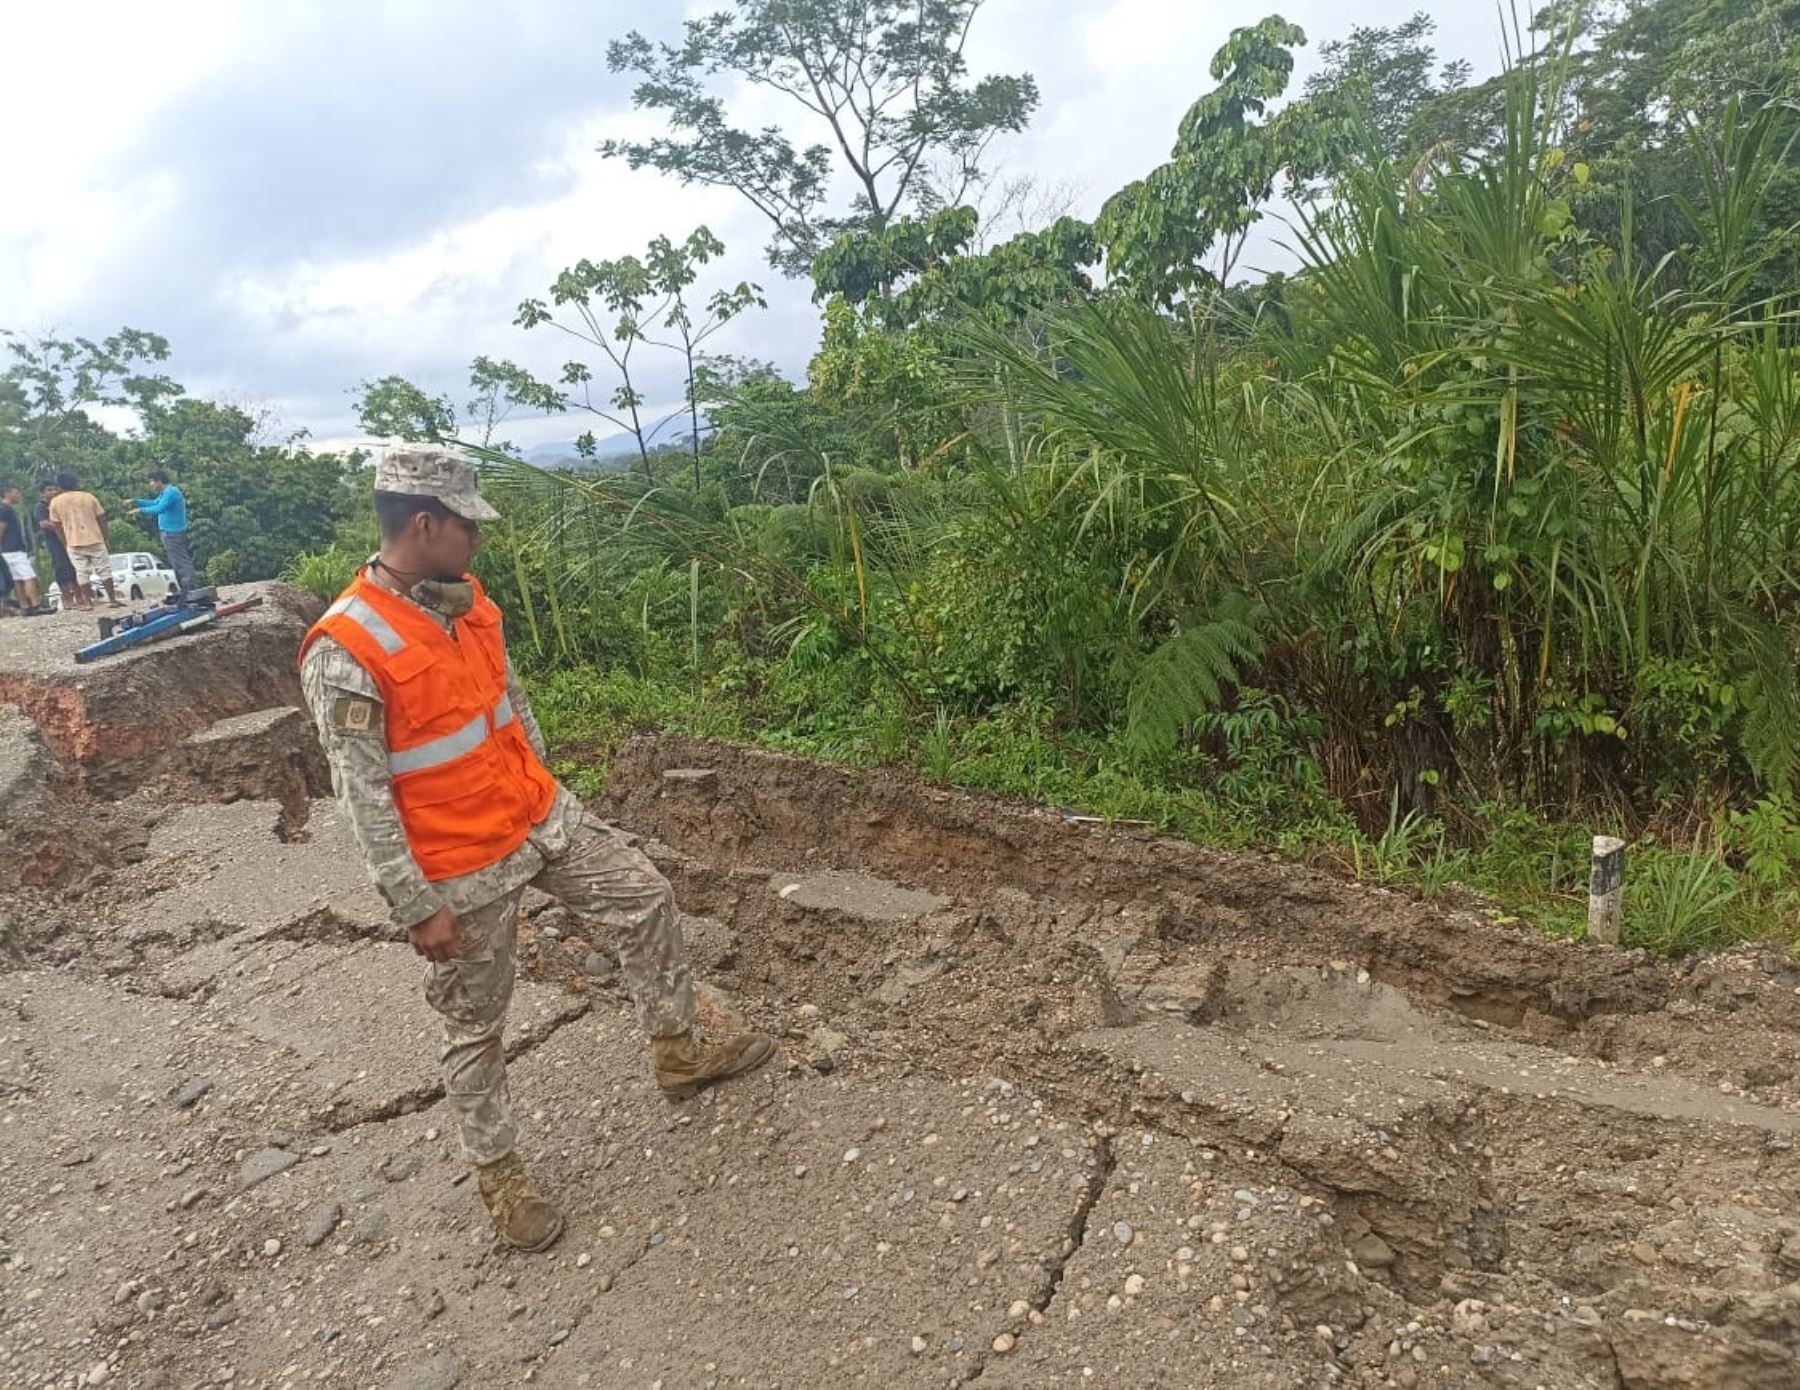 Cinco unidades del Ejército del Perú fueron desplegadas en Amazonas y Cajamarca para atender las emergencias ocasionadas por el fuerte sismo de magnitud 7.5 registrado ayer en Santa María de Nieva. ​ANDINA/Difusió